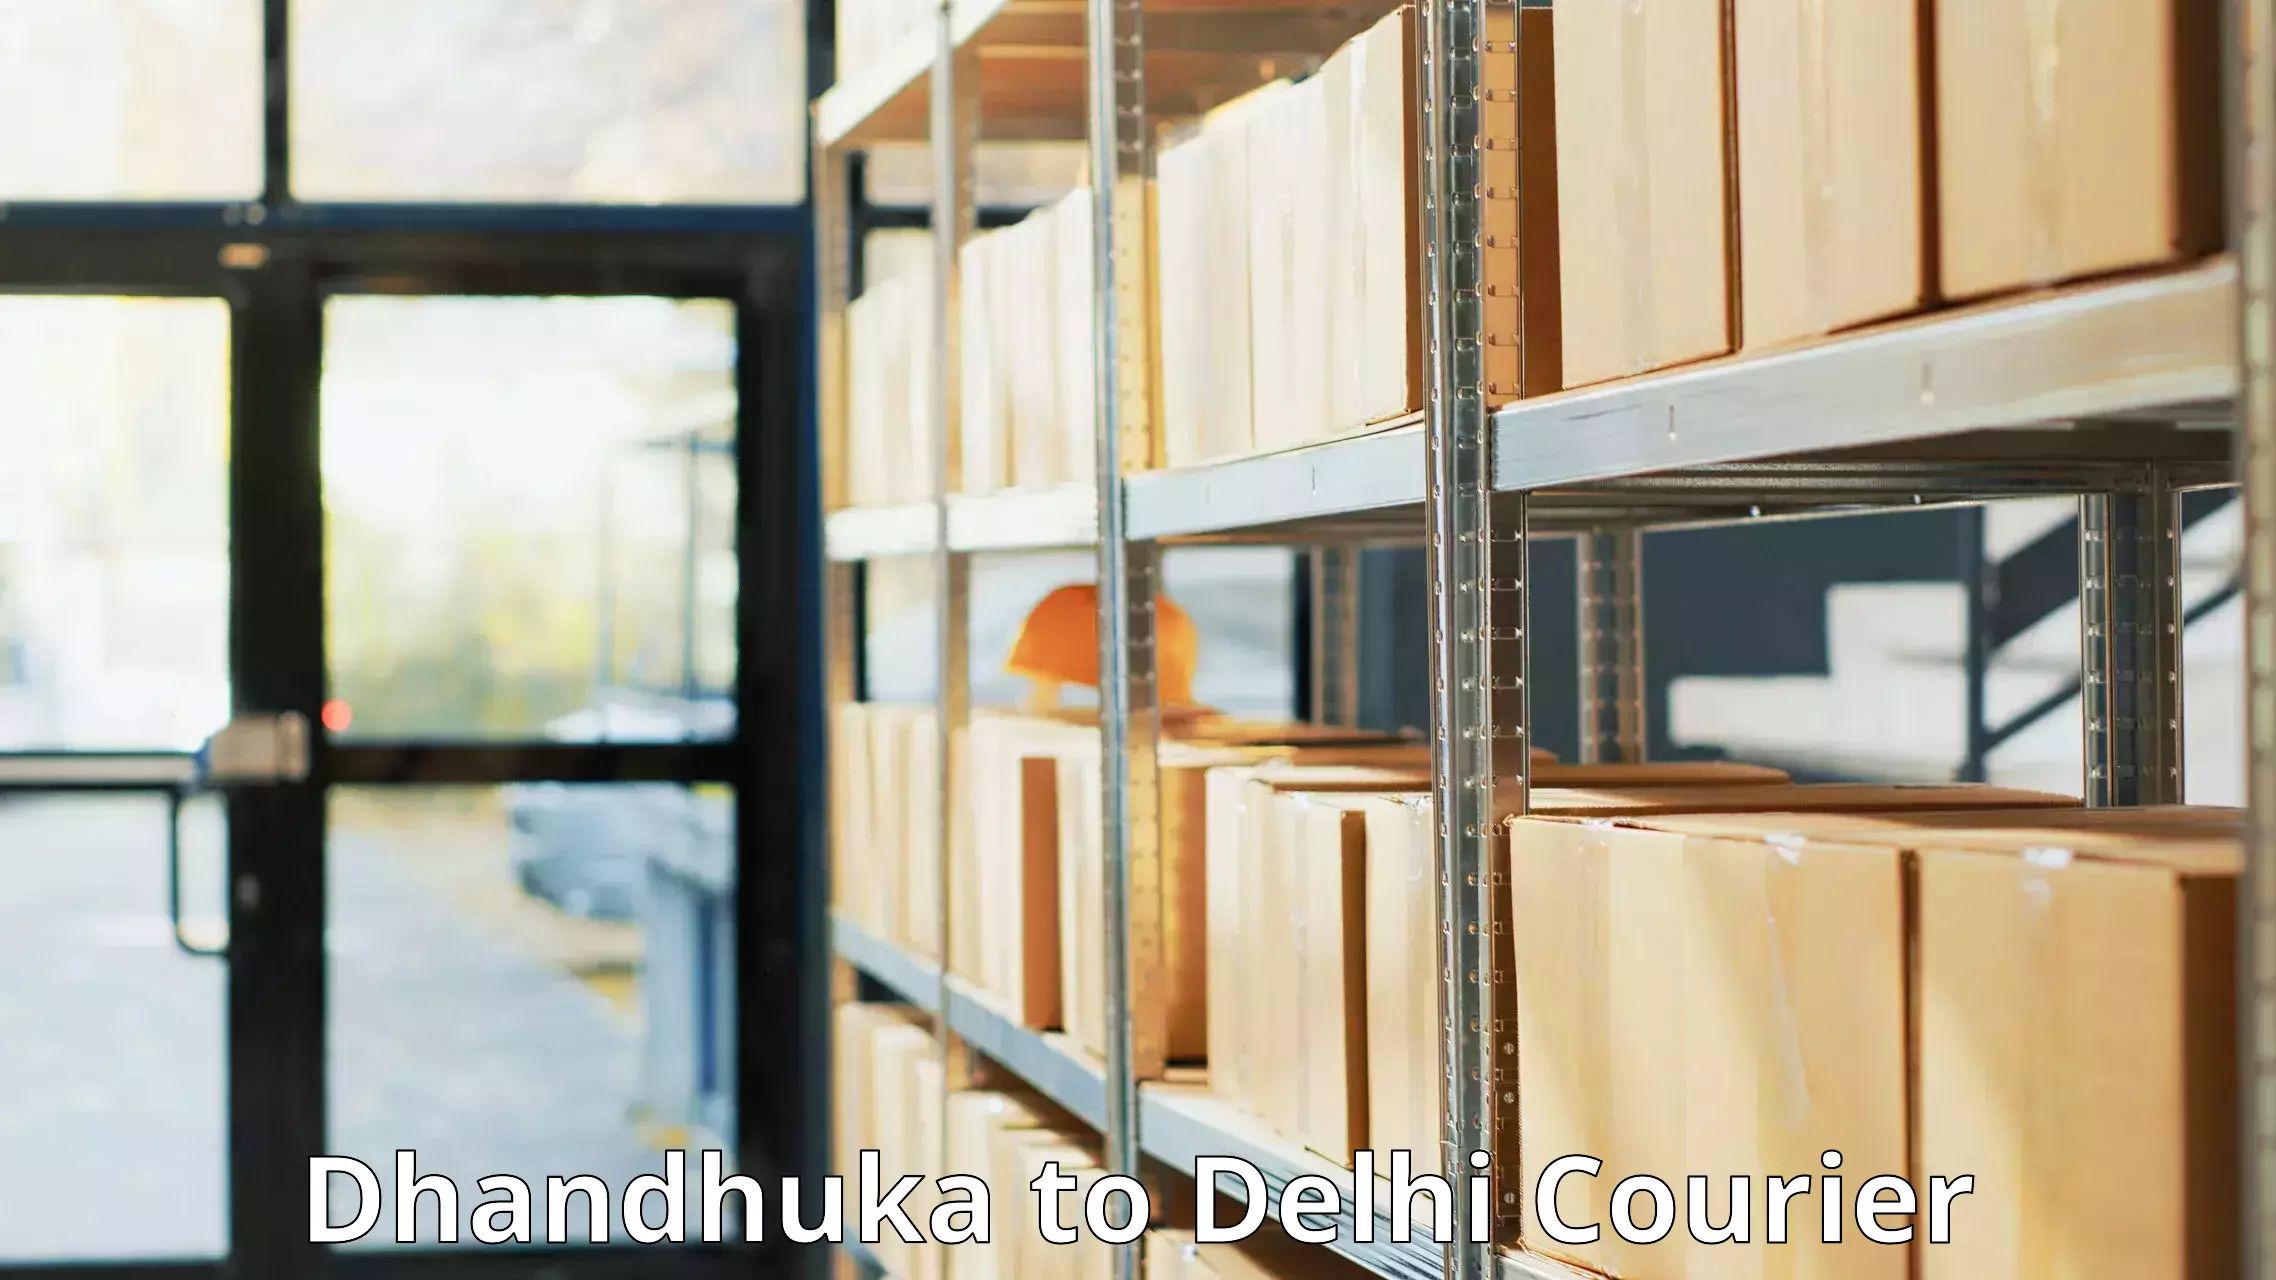 Courier service booking Dhandhuka to Kalkaji